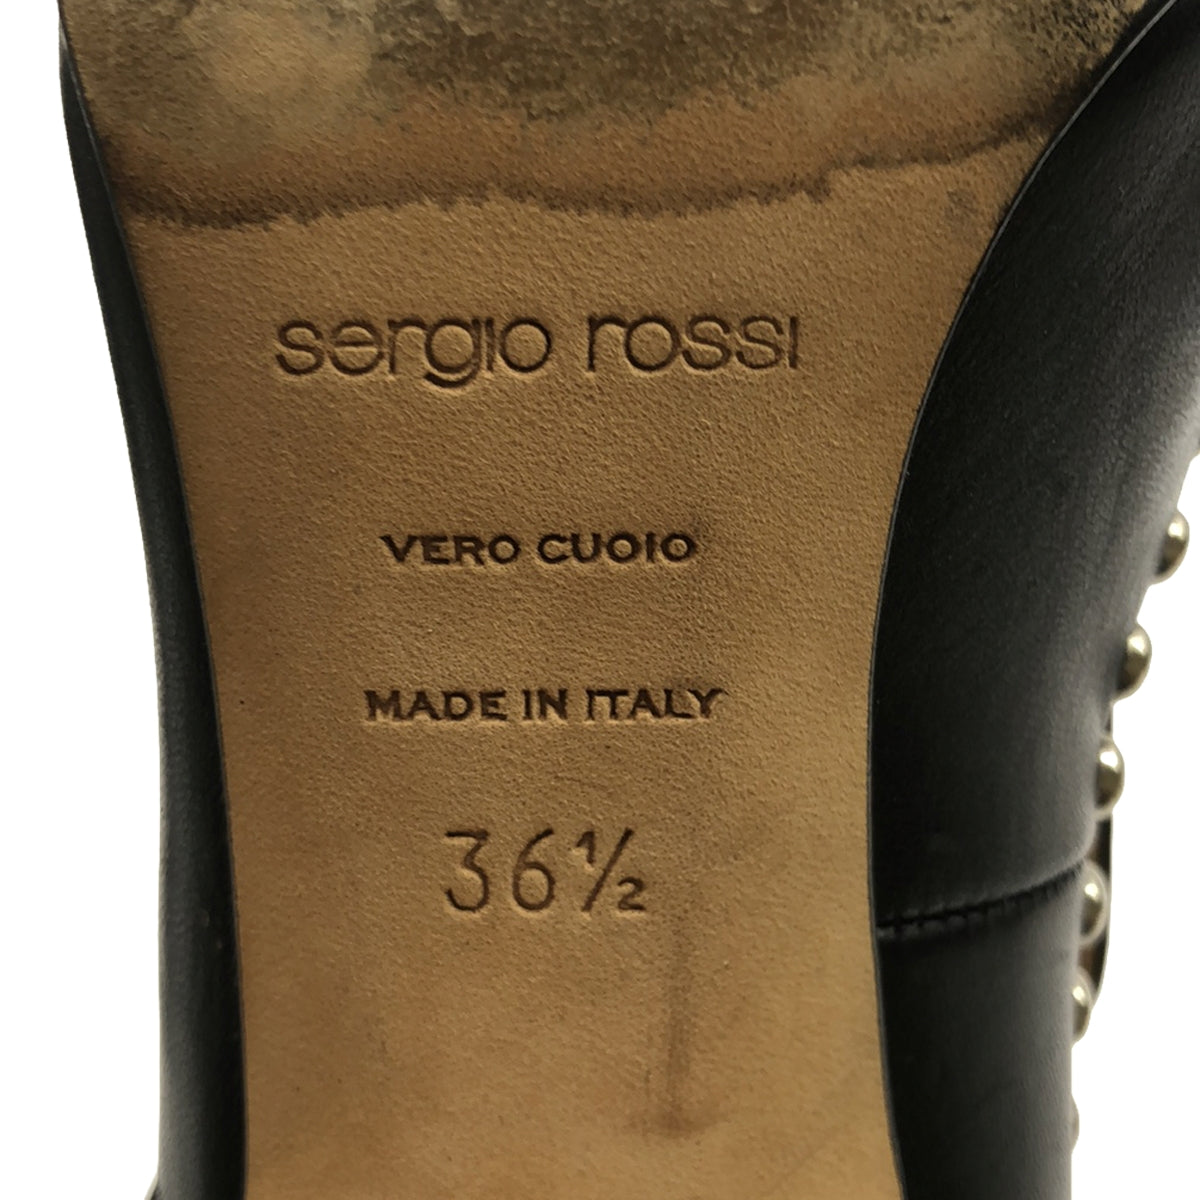 sergio rossi / セルジオロッシ | SR1 スタッズスクエアパンプス | 36 1/2 | レディース